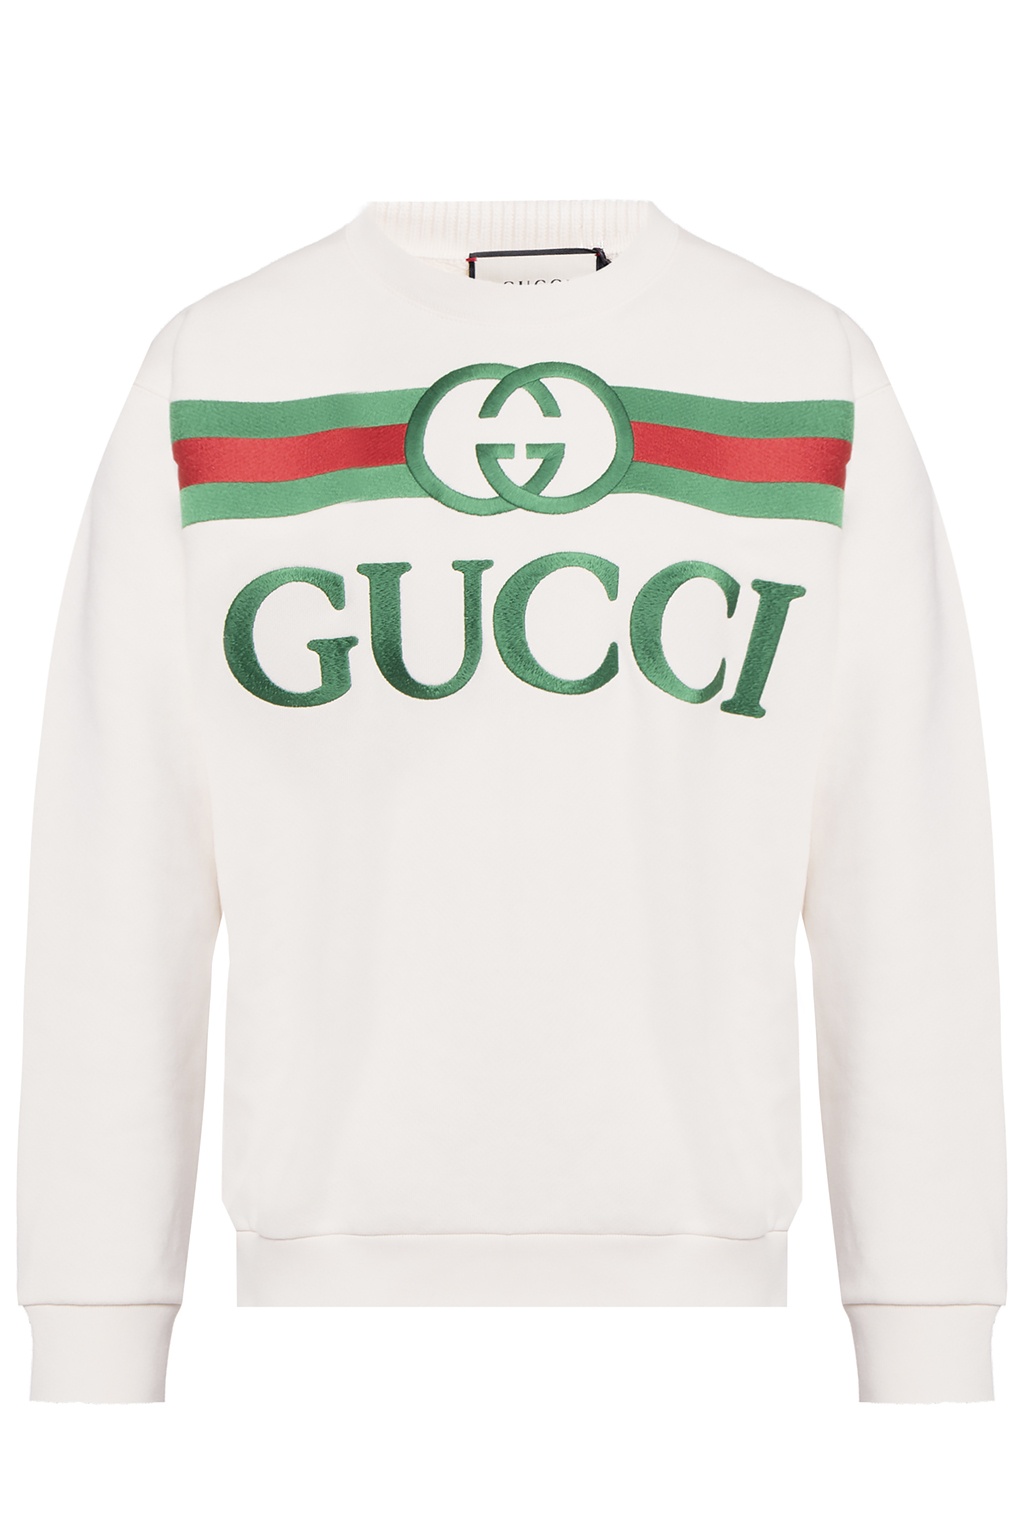 Gucci Eyewear SMALL Eyewear | IetpShops | Women's Clothing | Gucci Sweatshirt logo